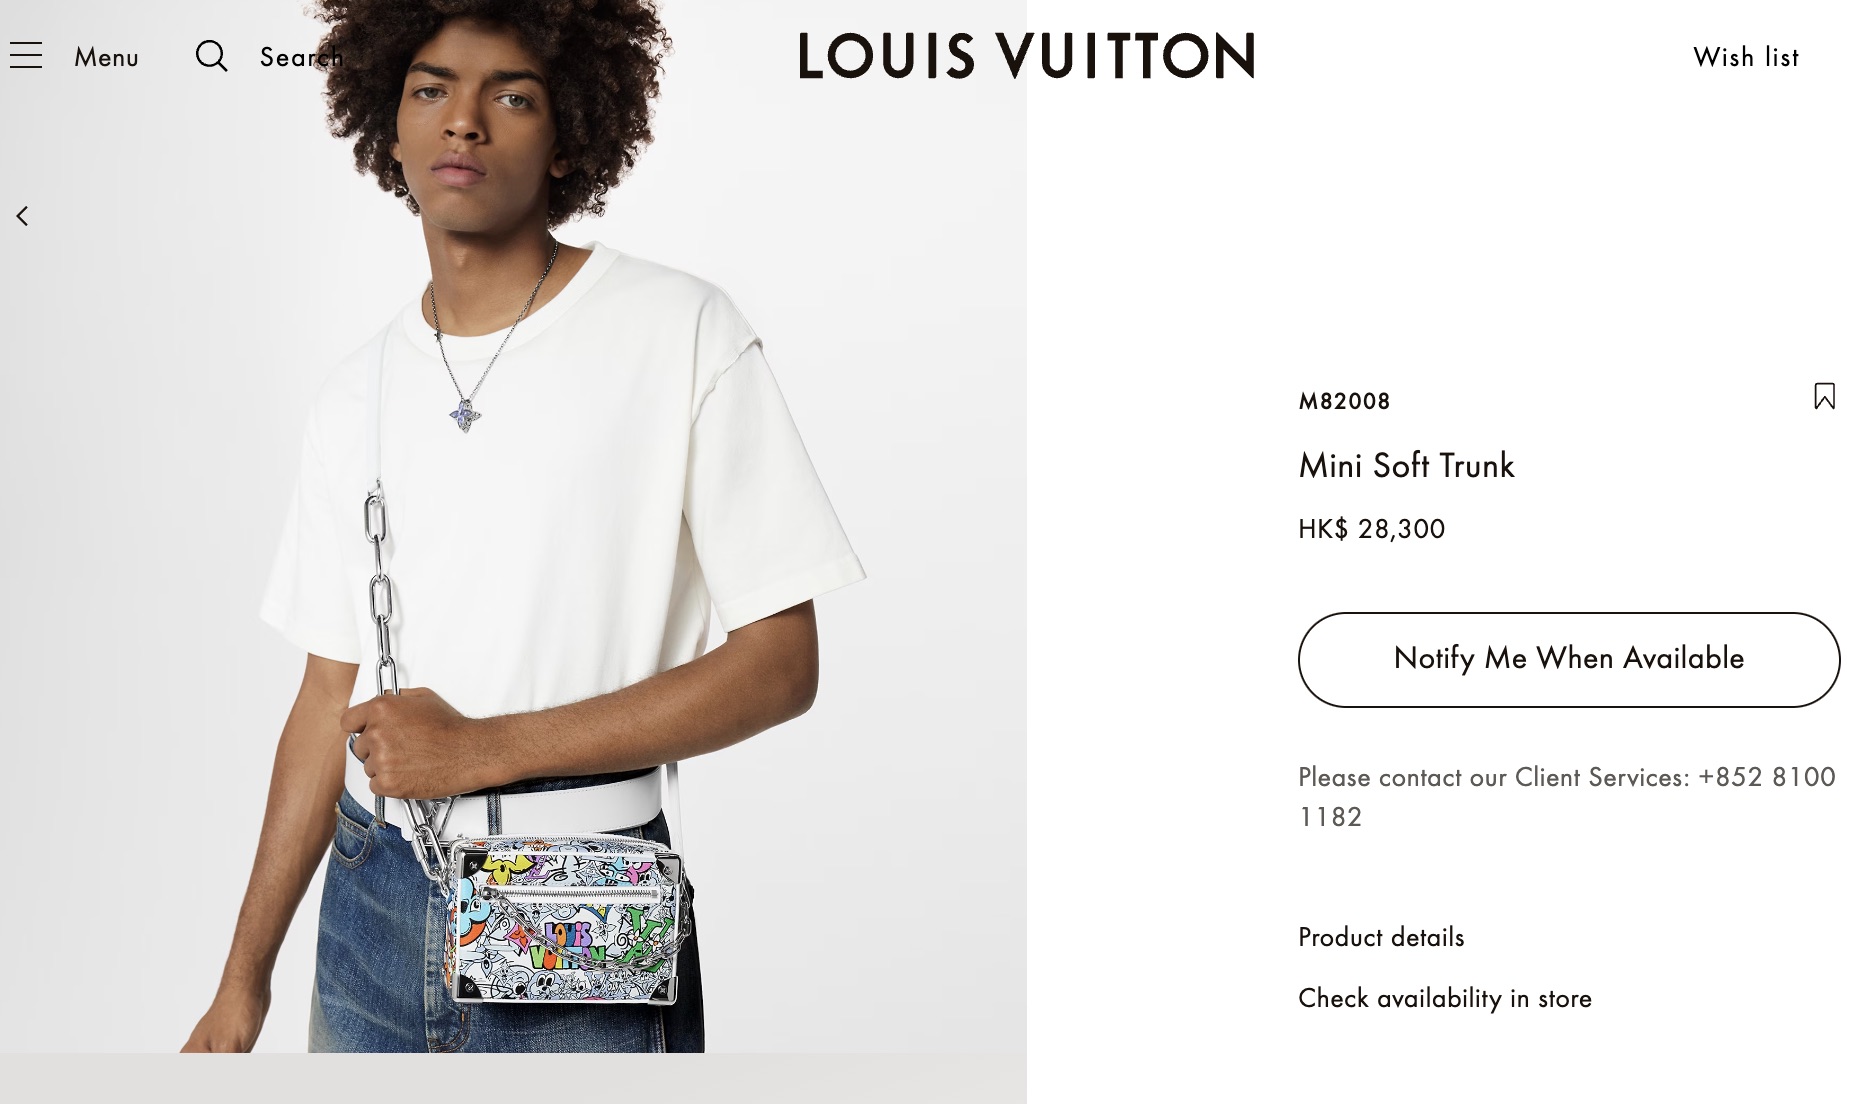 Женская сумка Louis Vuitton на официальном сайте бренда. Фото: Louis Vuitton.